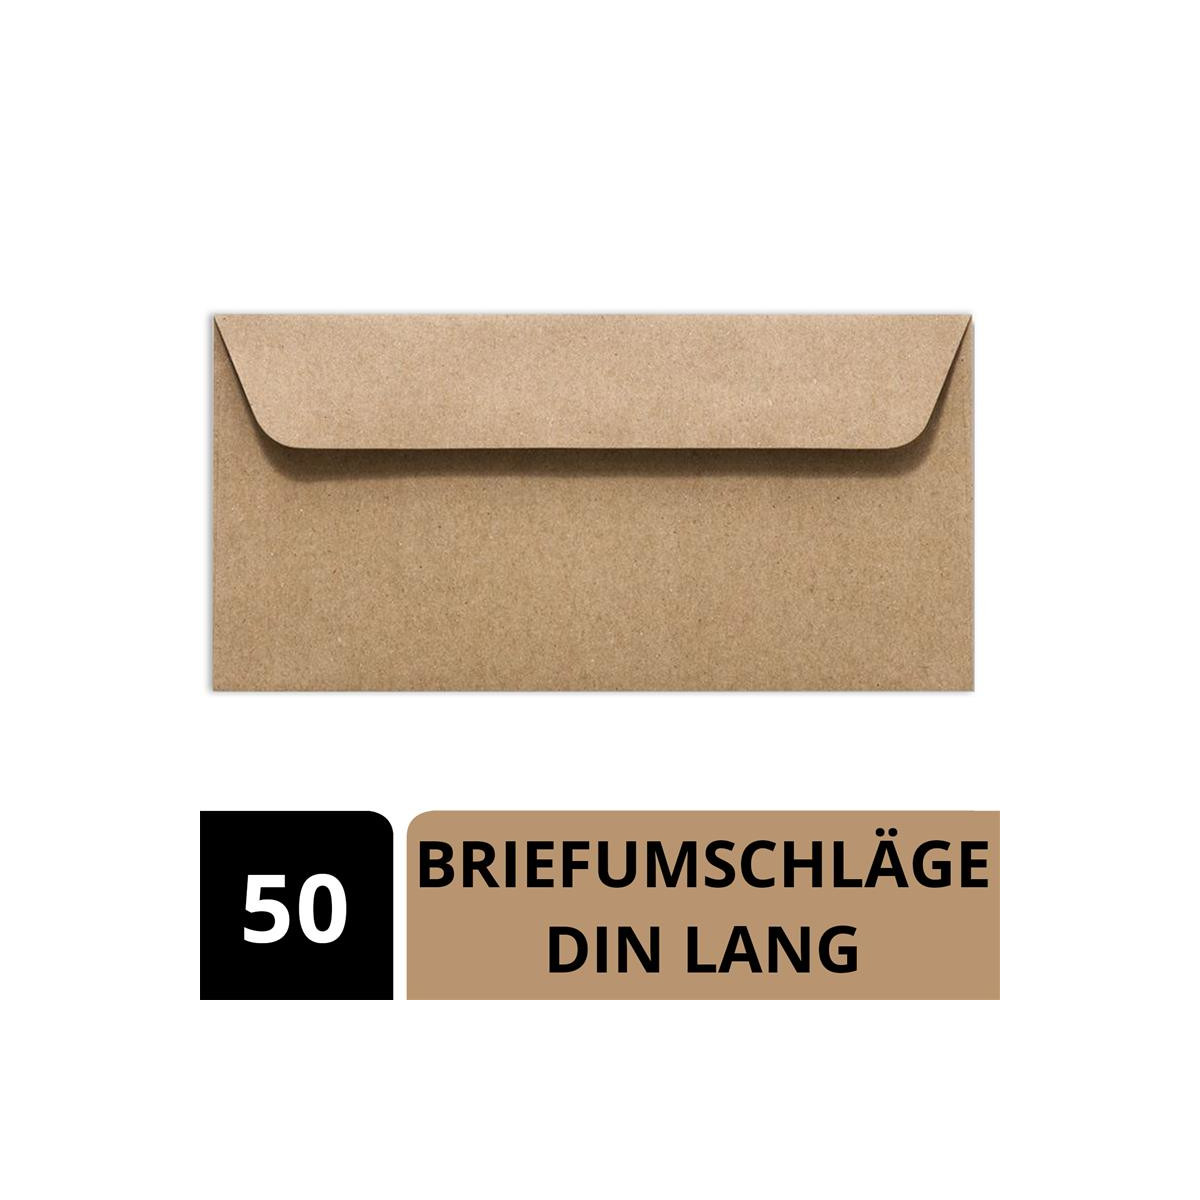 Briefumschläge DIN-Lang Sand Briefumschlag Kuvert Briefkuvert Umschlag 